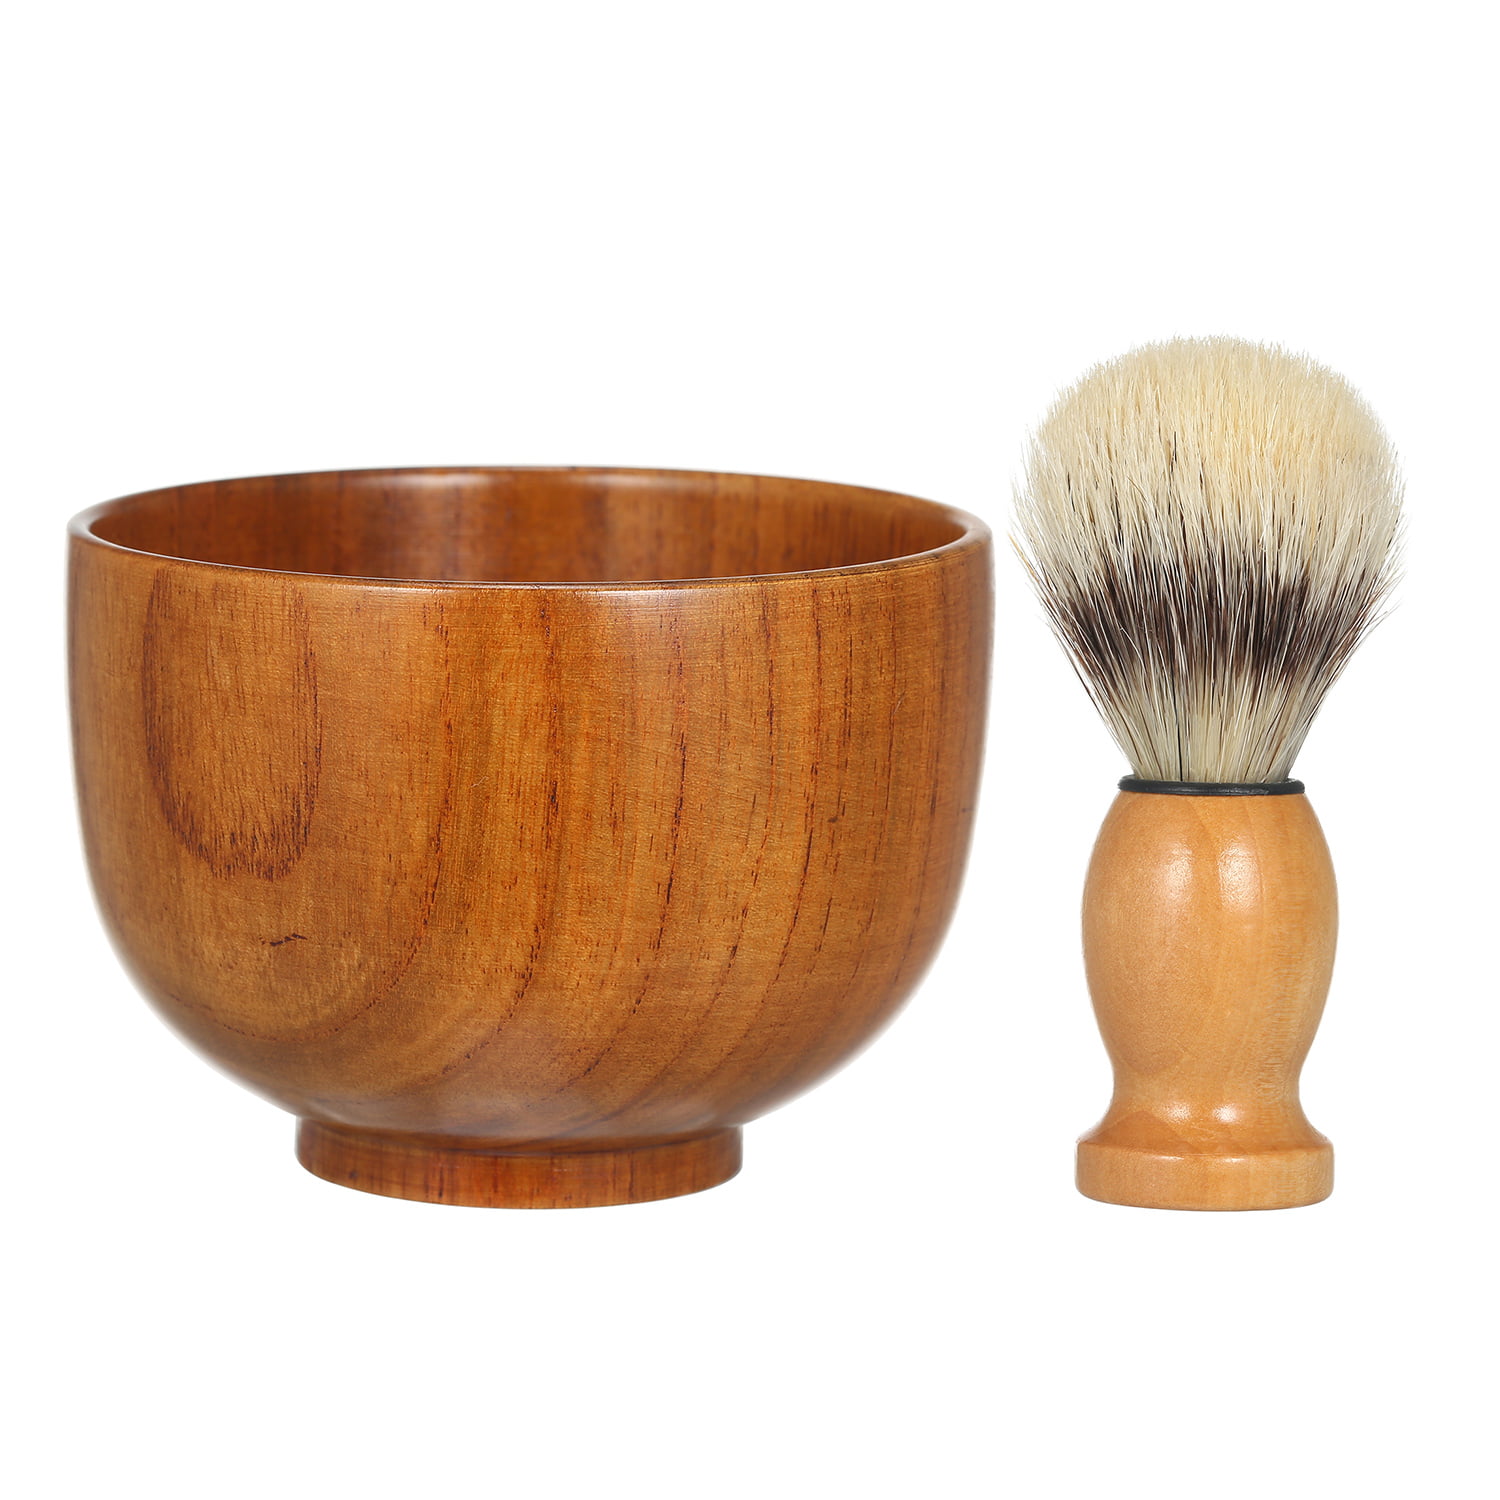 Men's Wooden Beard Shaving Bowl with Lather Brush